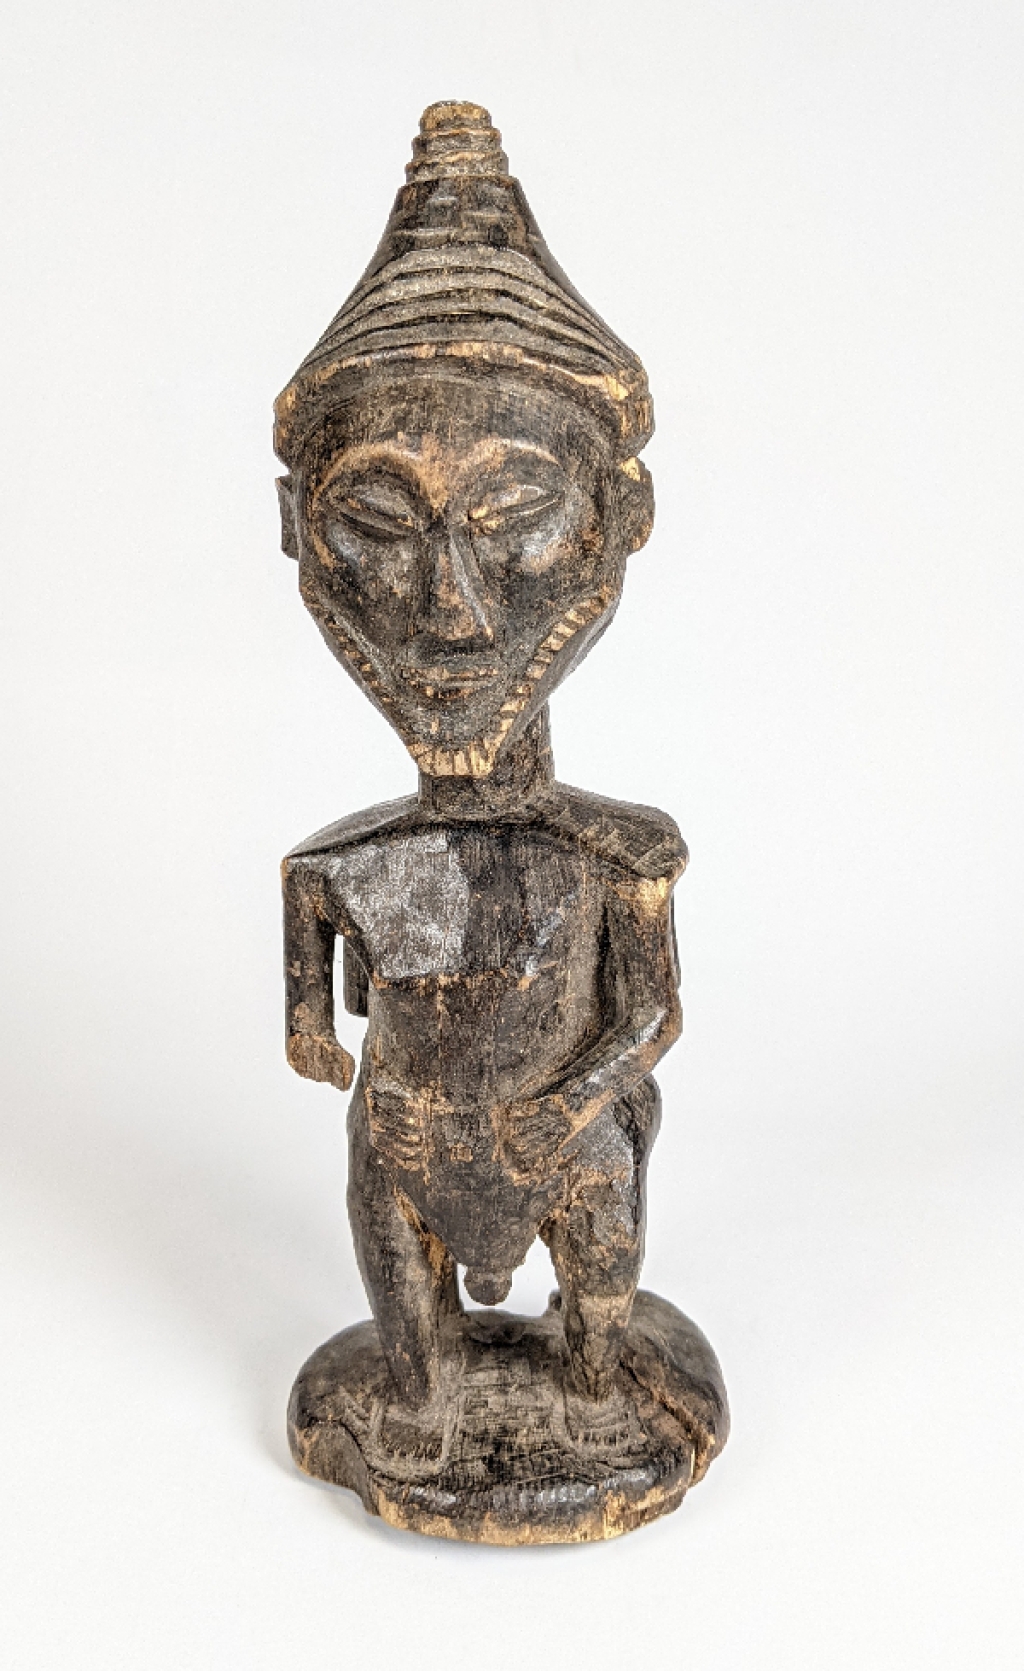 [Afryka, poł. XX w.] Rzeźba janusowa - męska żeńska